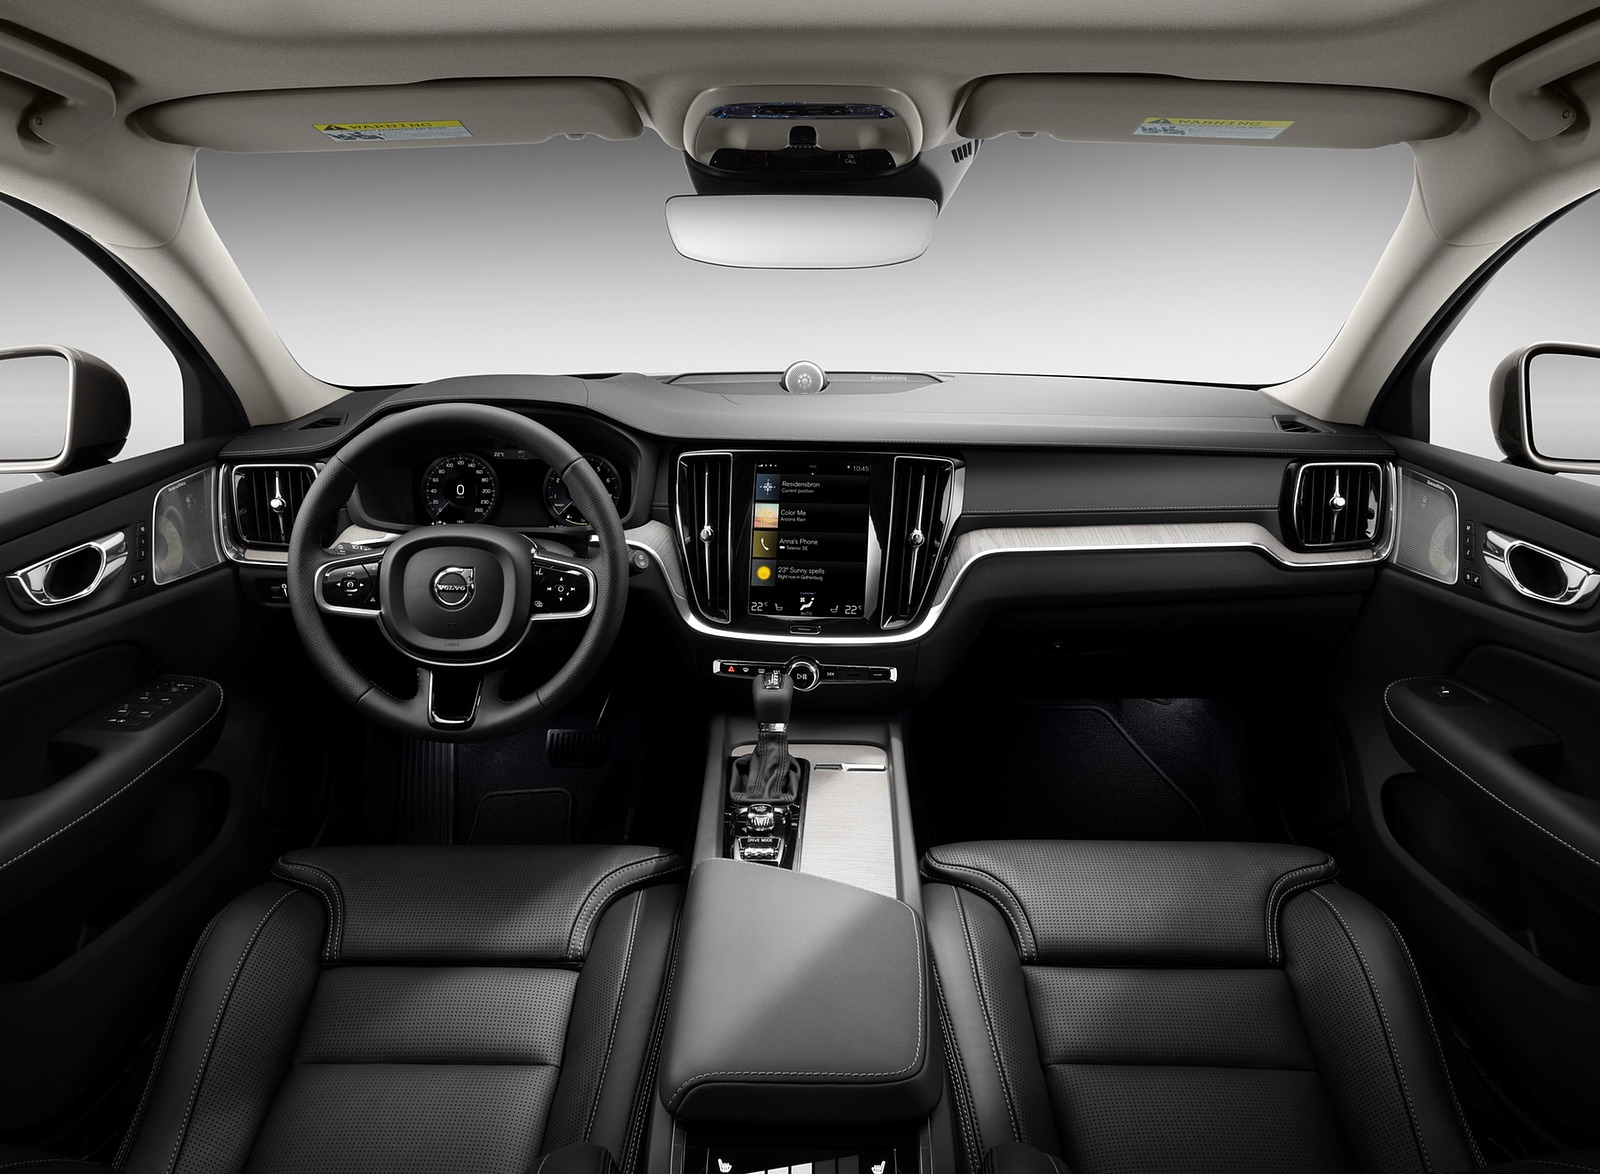 2019 Volvo V60 Interior Cockpit Wallpapers #121 of 140